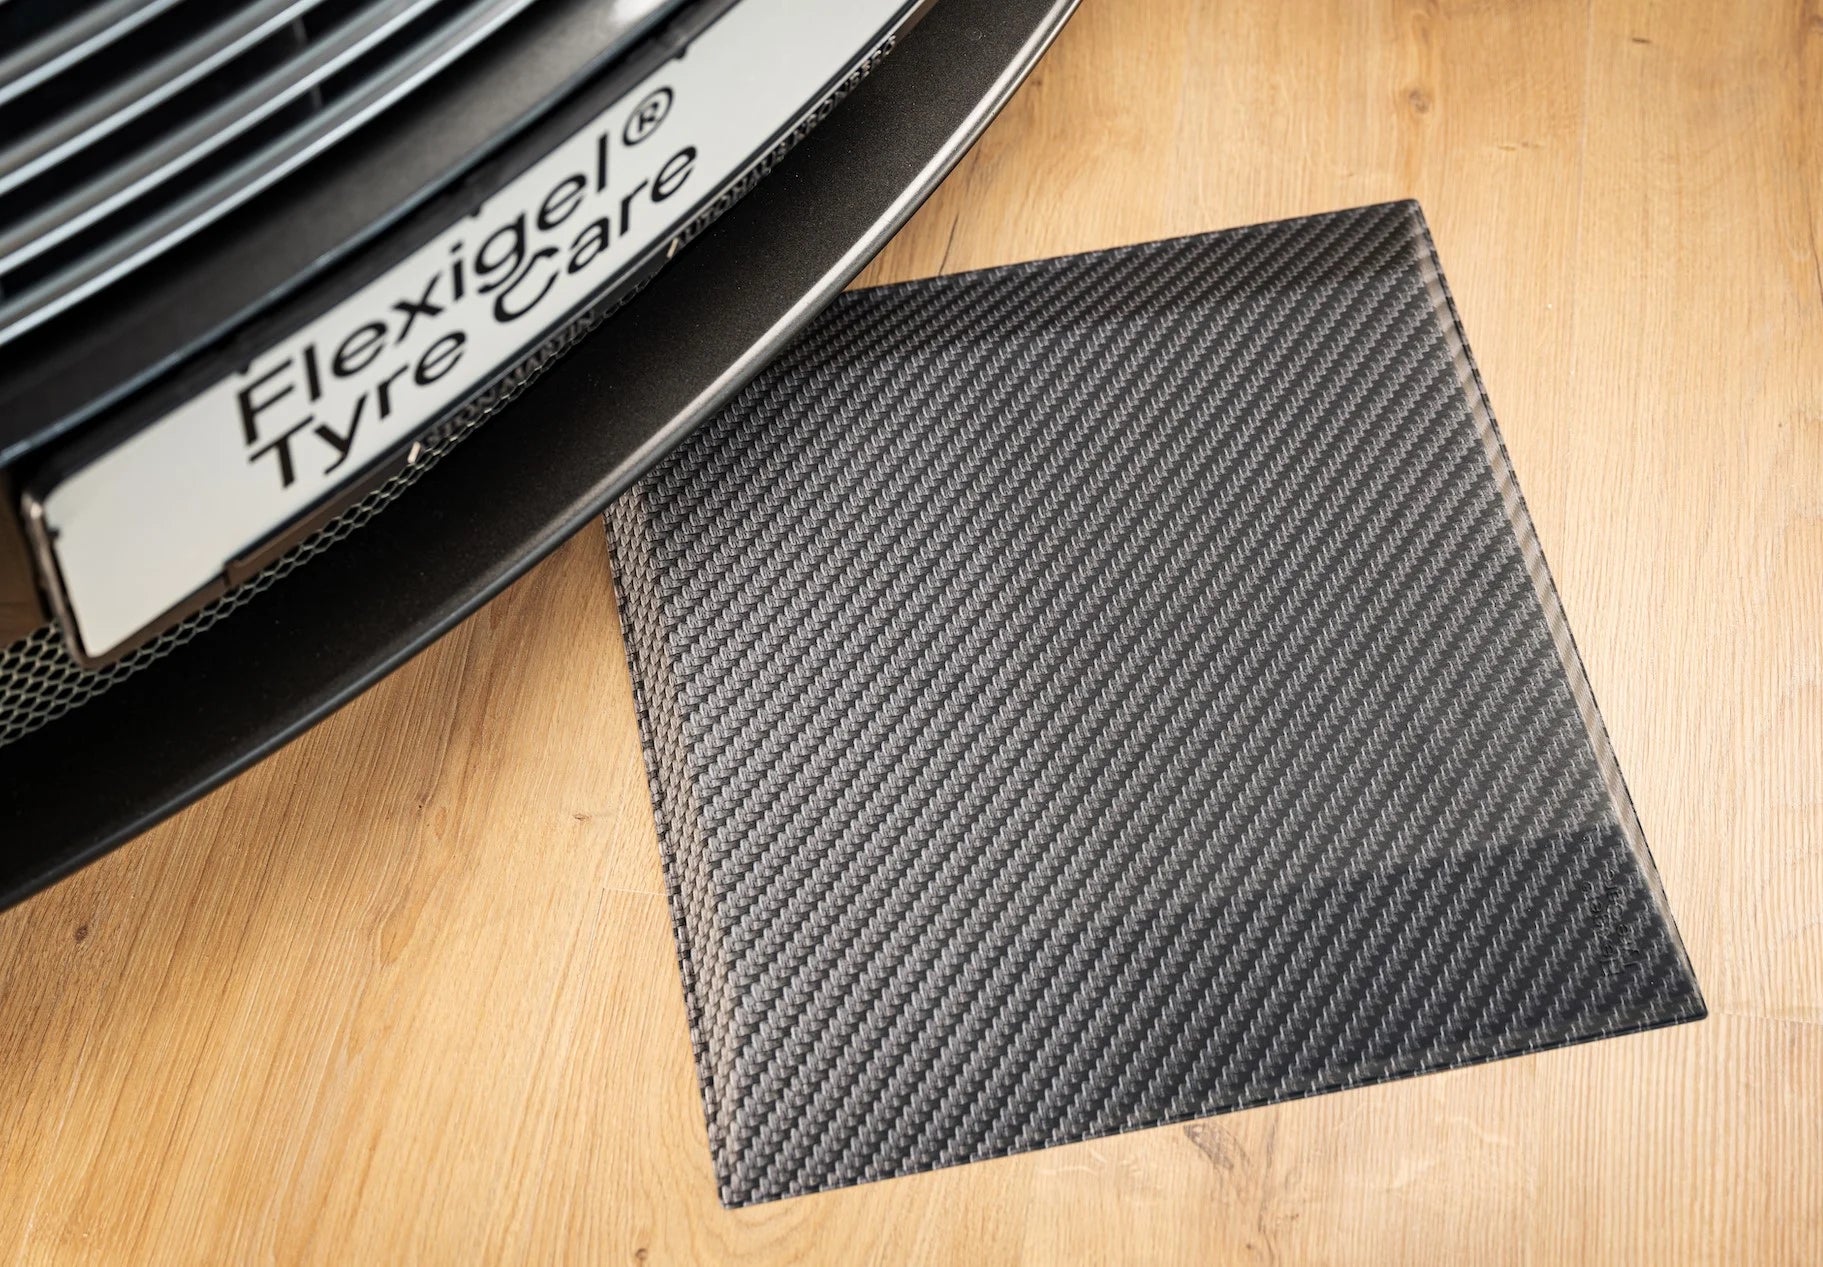 Reifenschoner in Carbon-Optik liegt auf einem Holzboden. Darüber steht ein Fahrzeug mit einem Flexigel® Tyre Care Kennzeichen. 